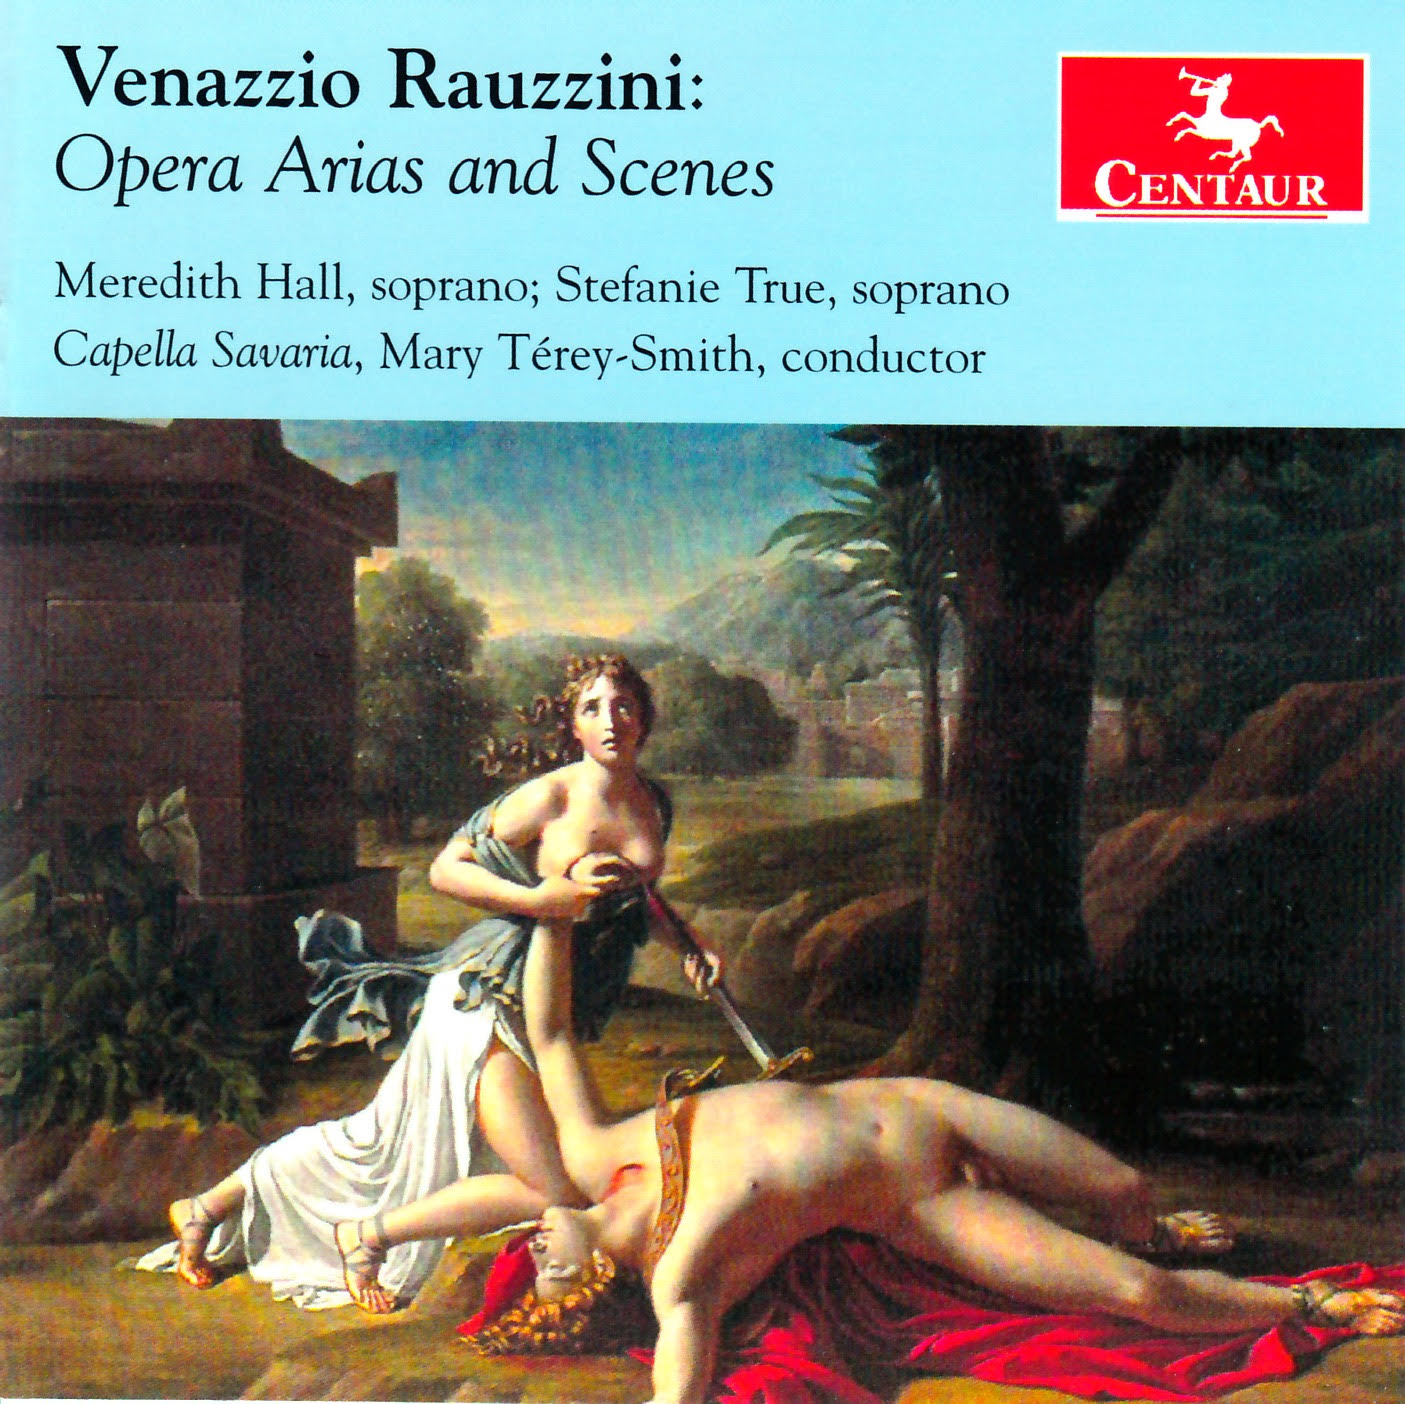 Venazzio Rauzzini, Opera Arias and Scenes